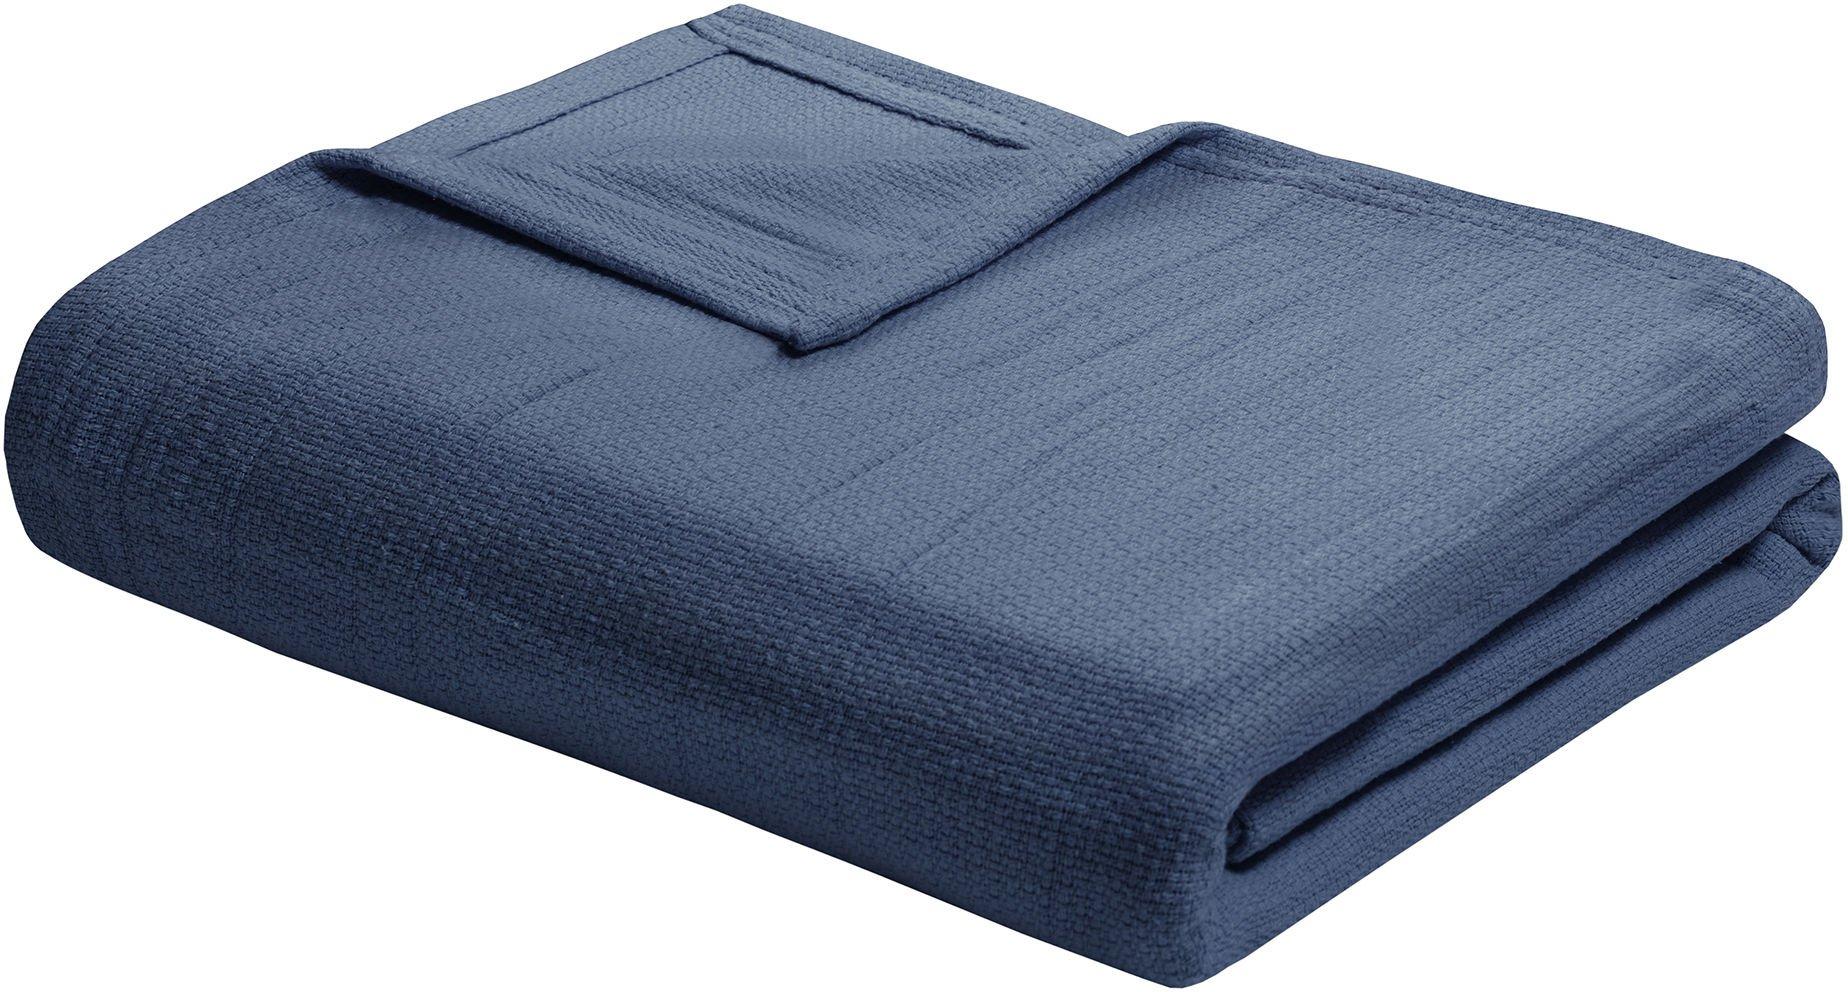 Freshspun Basketweave Blanket